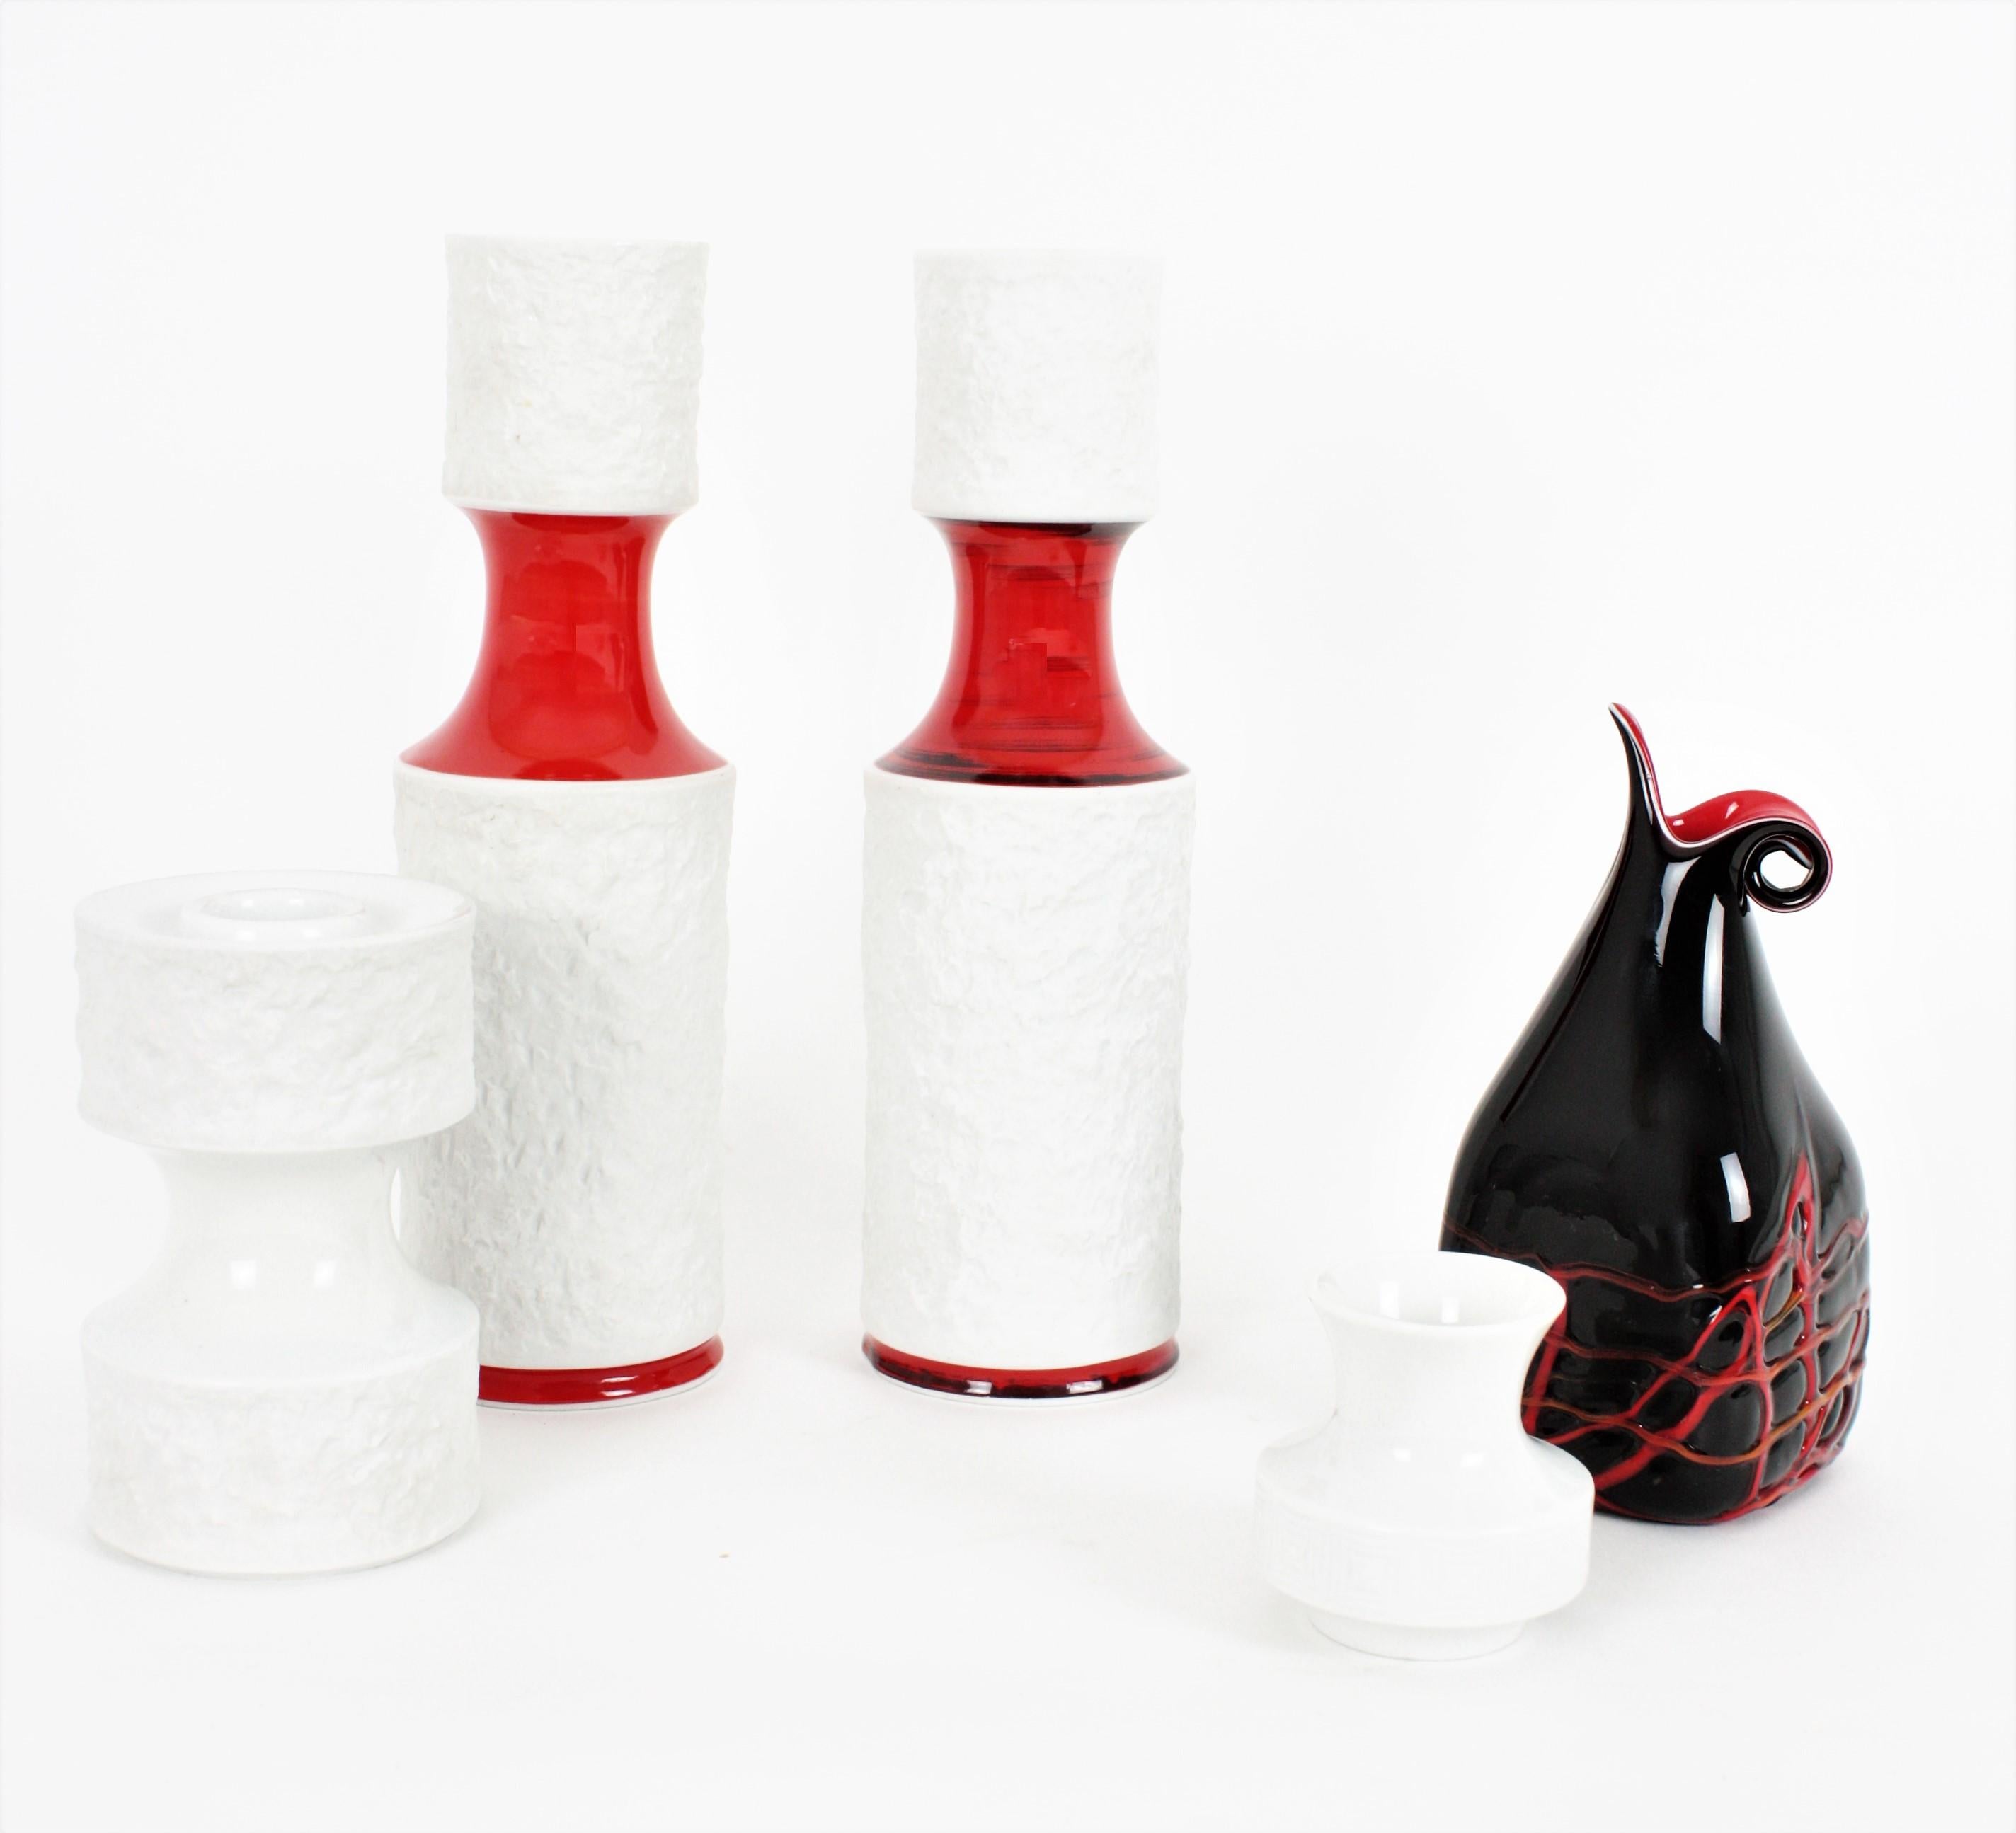 Bavaria Porzellanvasen und Kerzenhalter von KPM 'Königliche Porzellan-Manufaktur', Deutschland, 1960er Jahre
Das Set besteht aus einem Paar weißer, unglasierter, strukturierter Porzellanvasen mit roten, glasierten Akzenten, einer kleinen Vase und